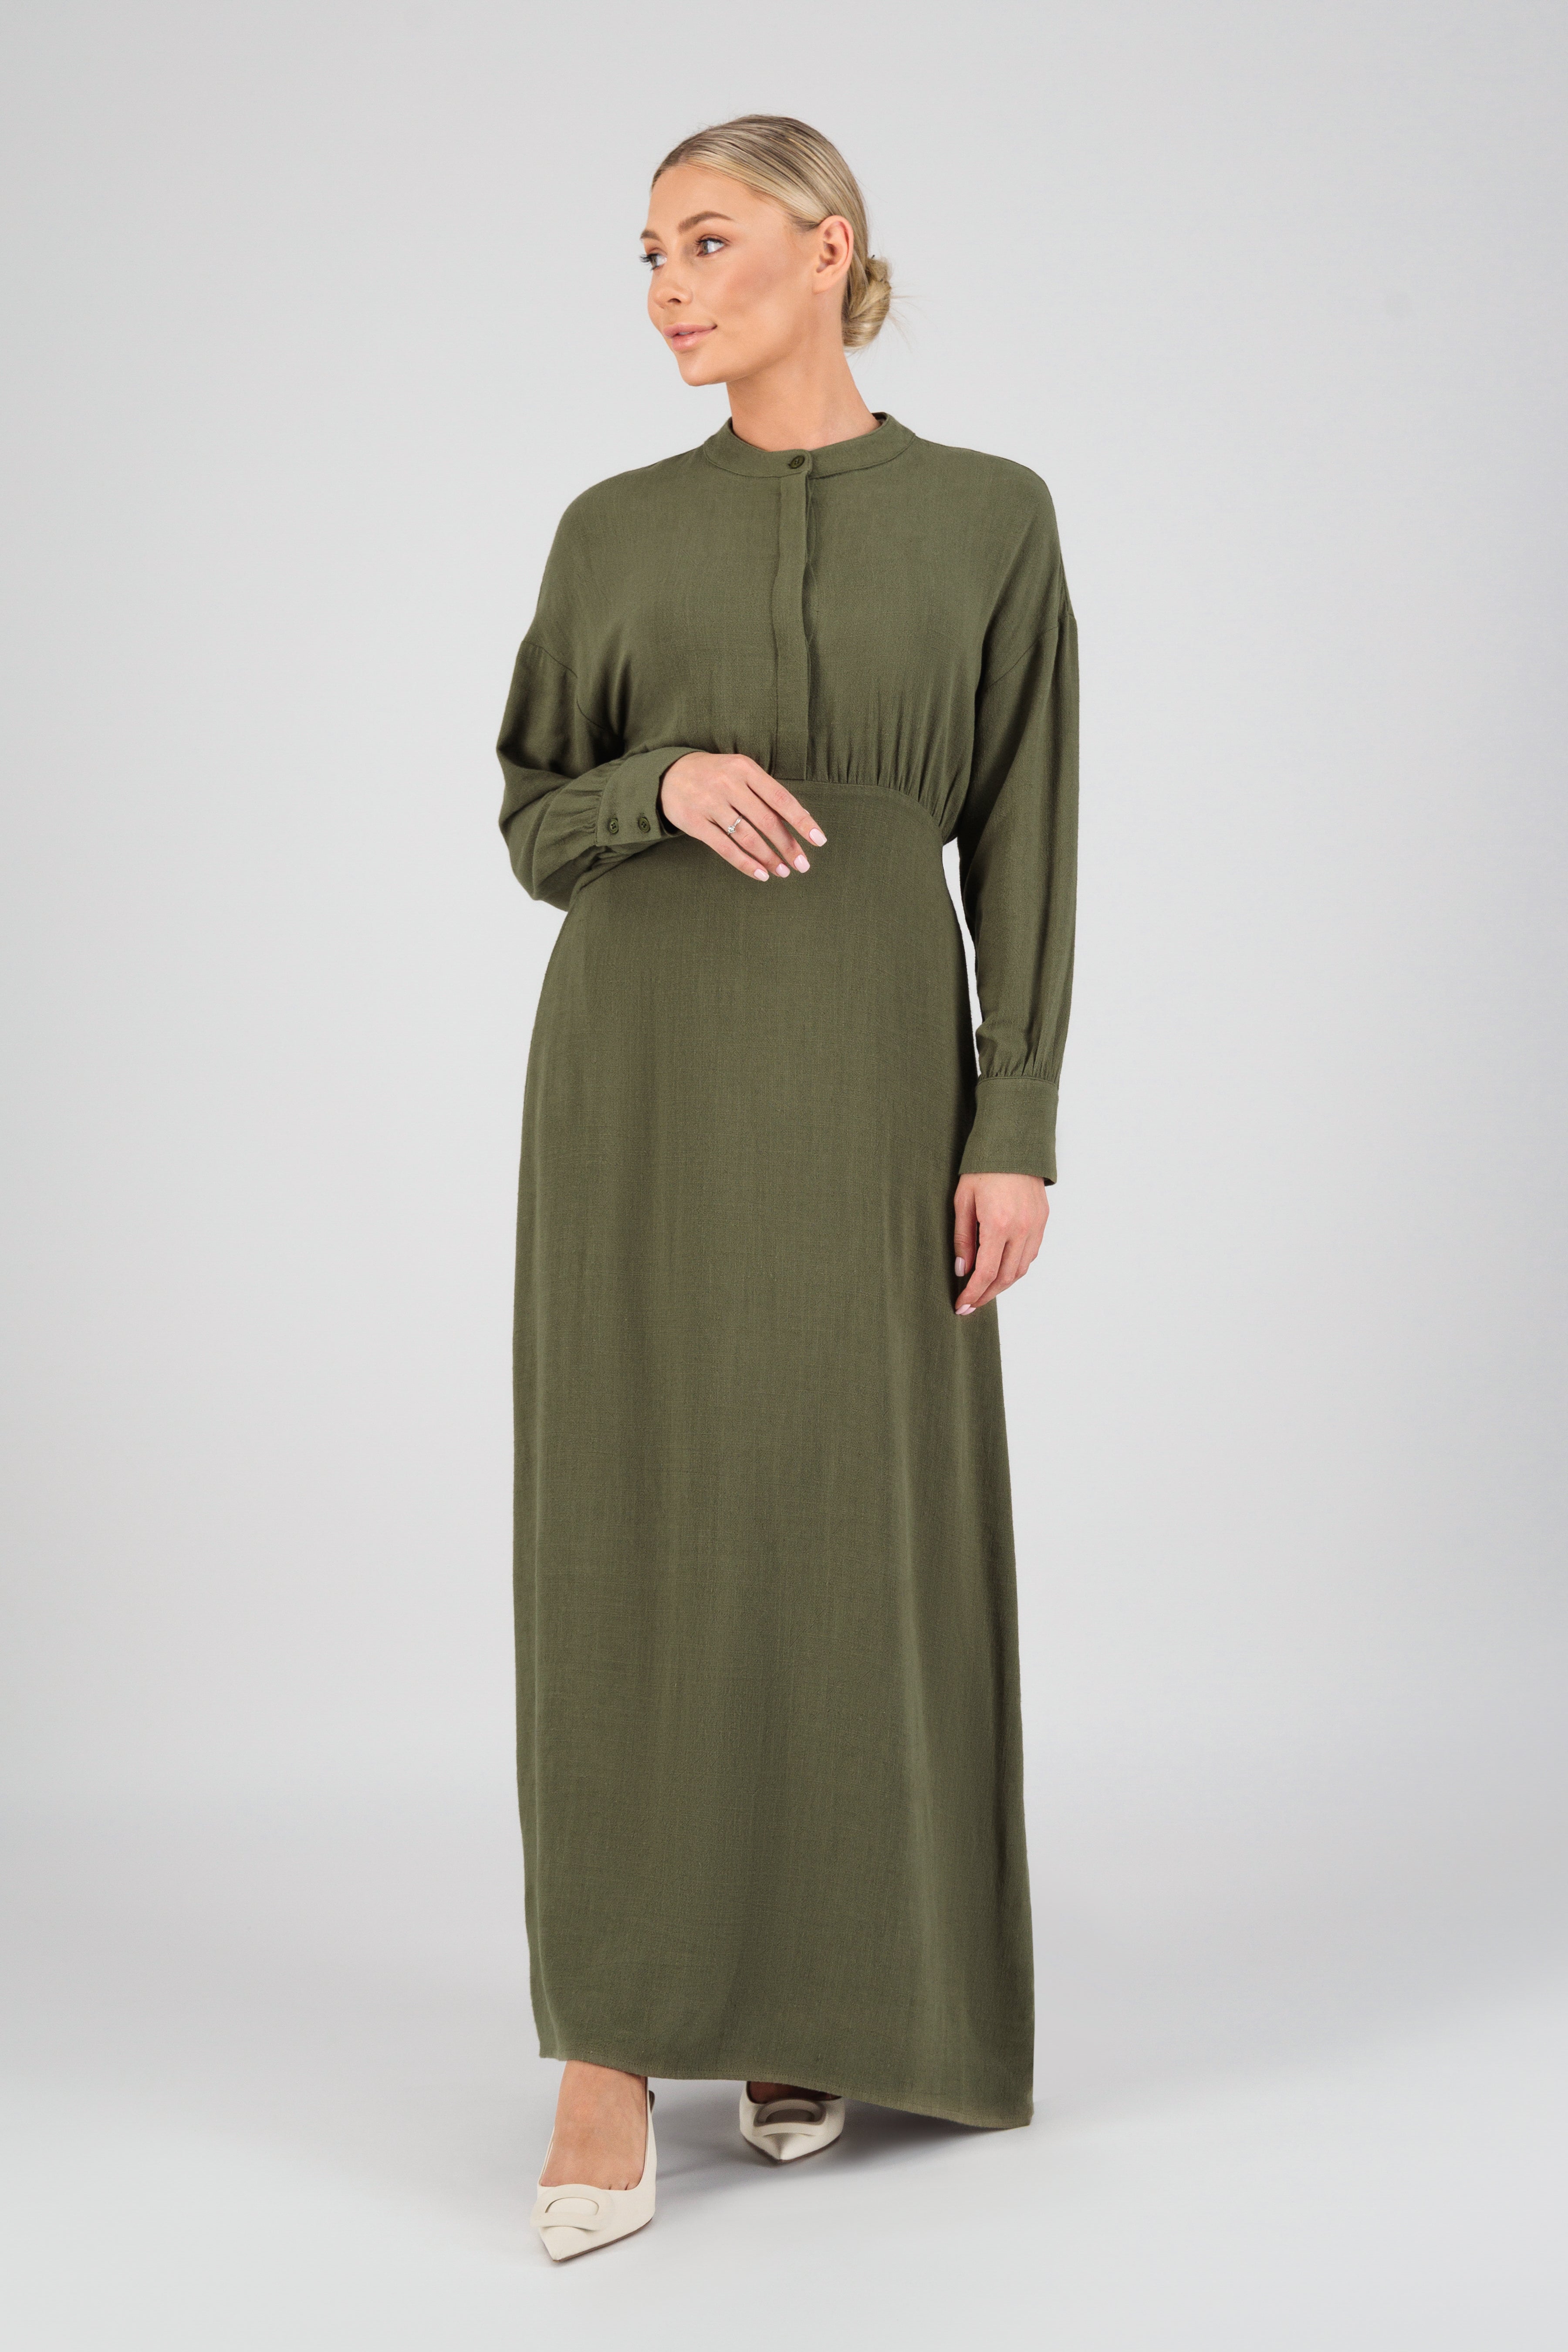 CA - Linen Blend Dress - Matcha